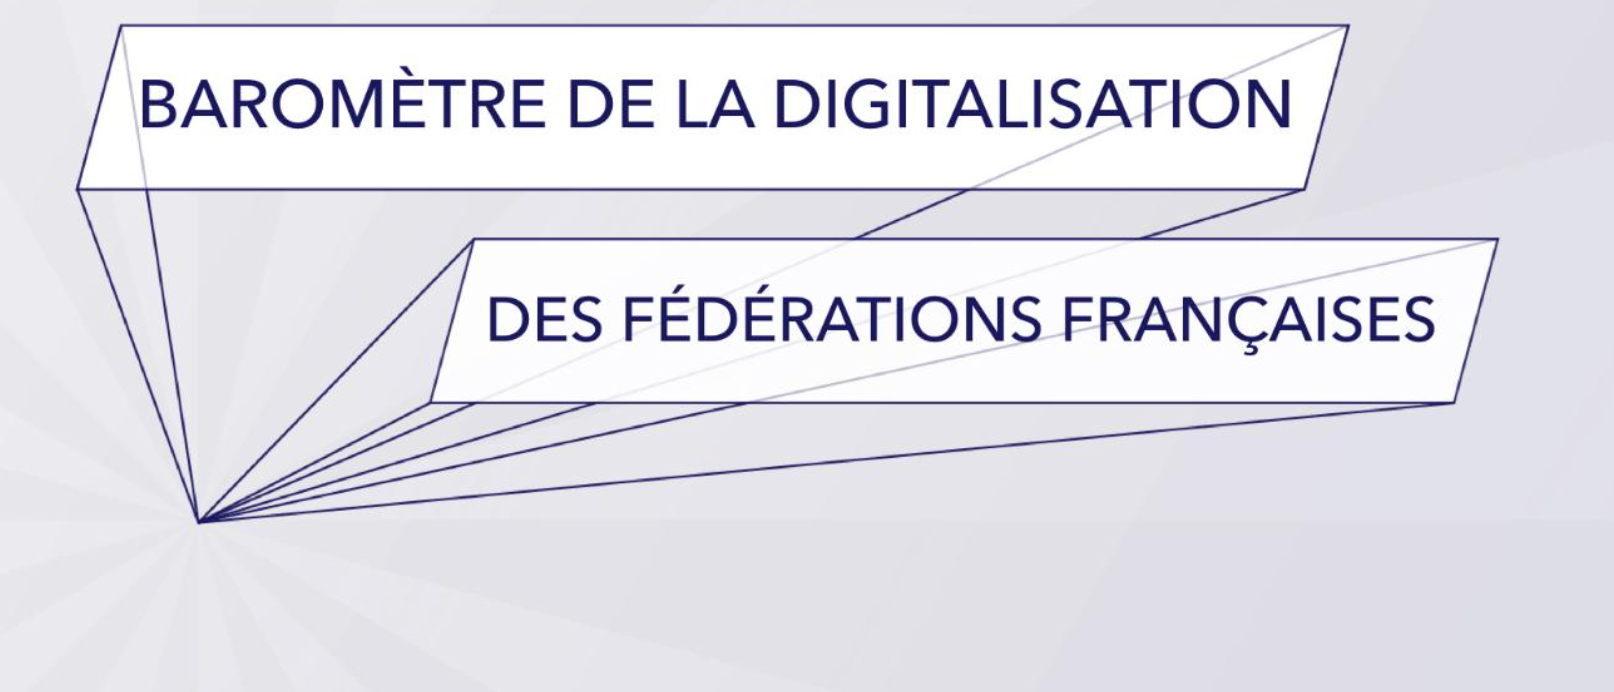 Baromètre de la digitalisation des fédérations françaises